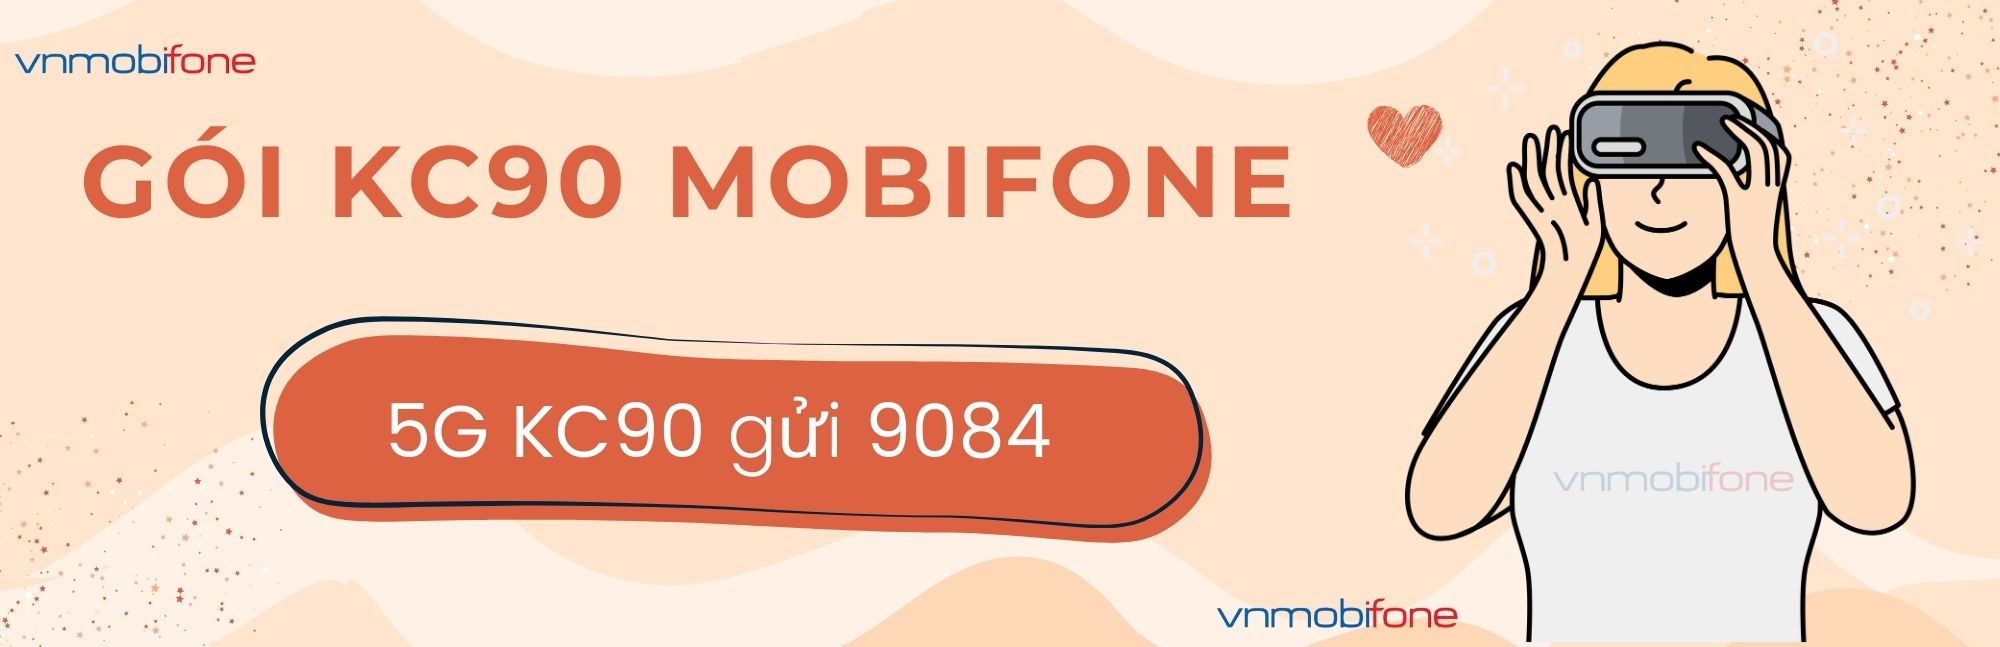 đăng ký gói kc90 mobifone